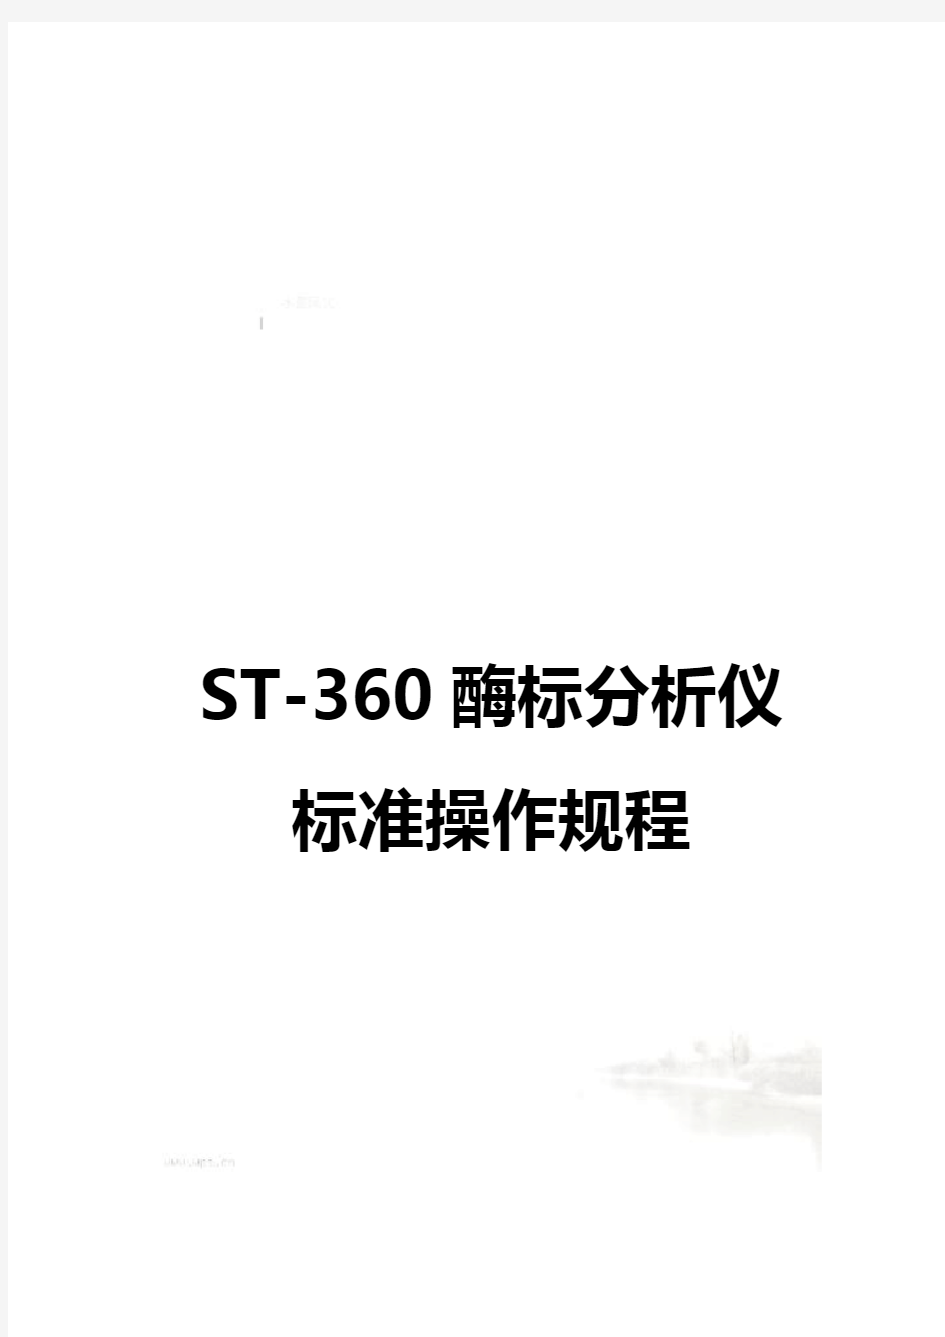 科华ST-360酶标仪操作规程